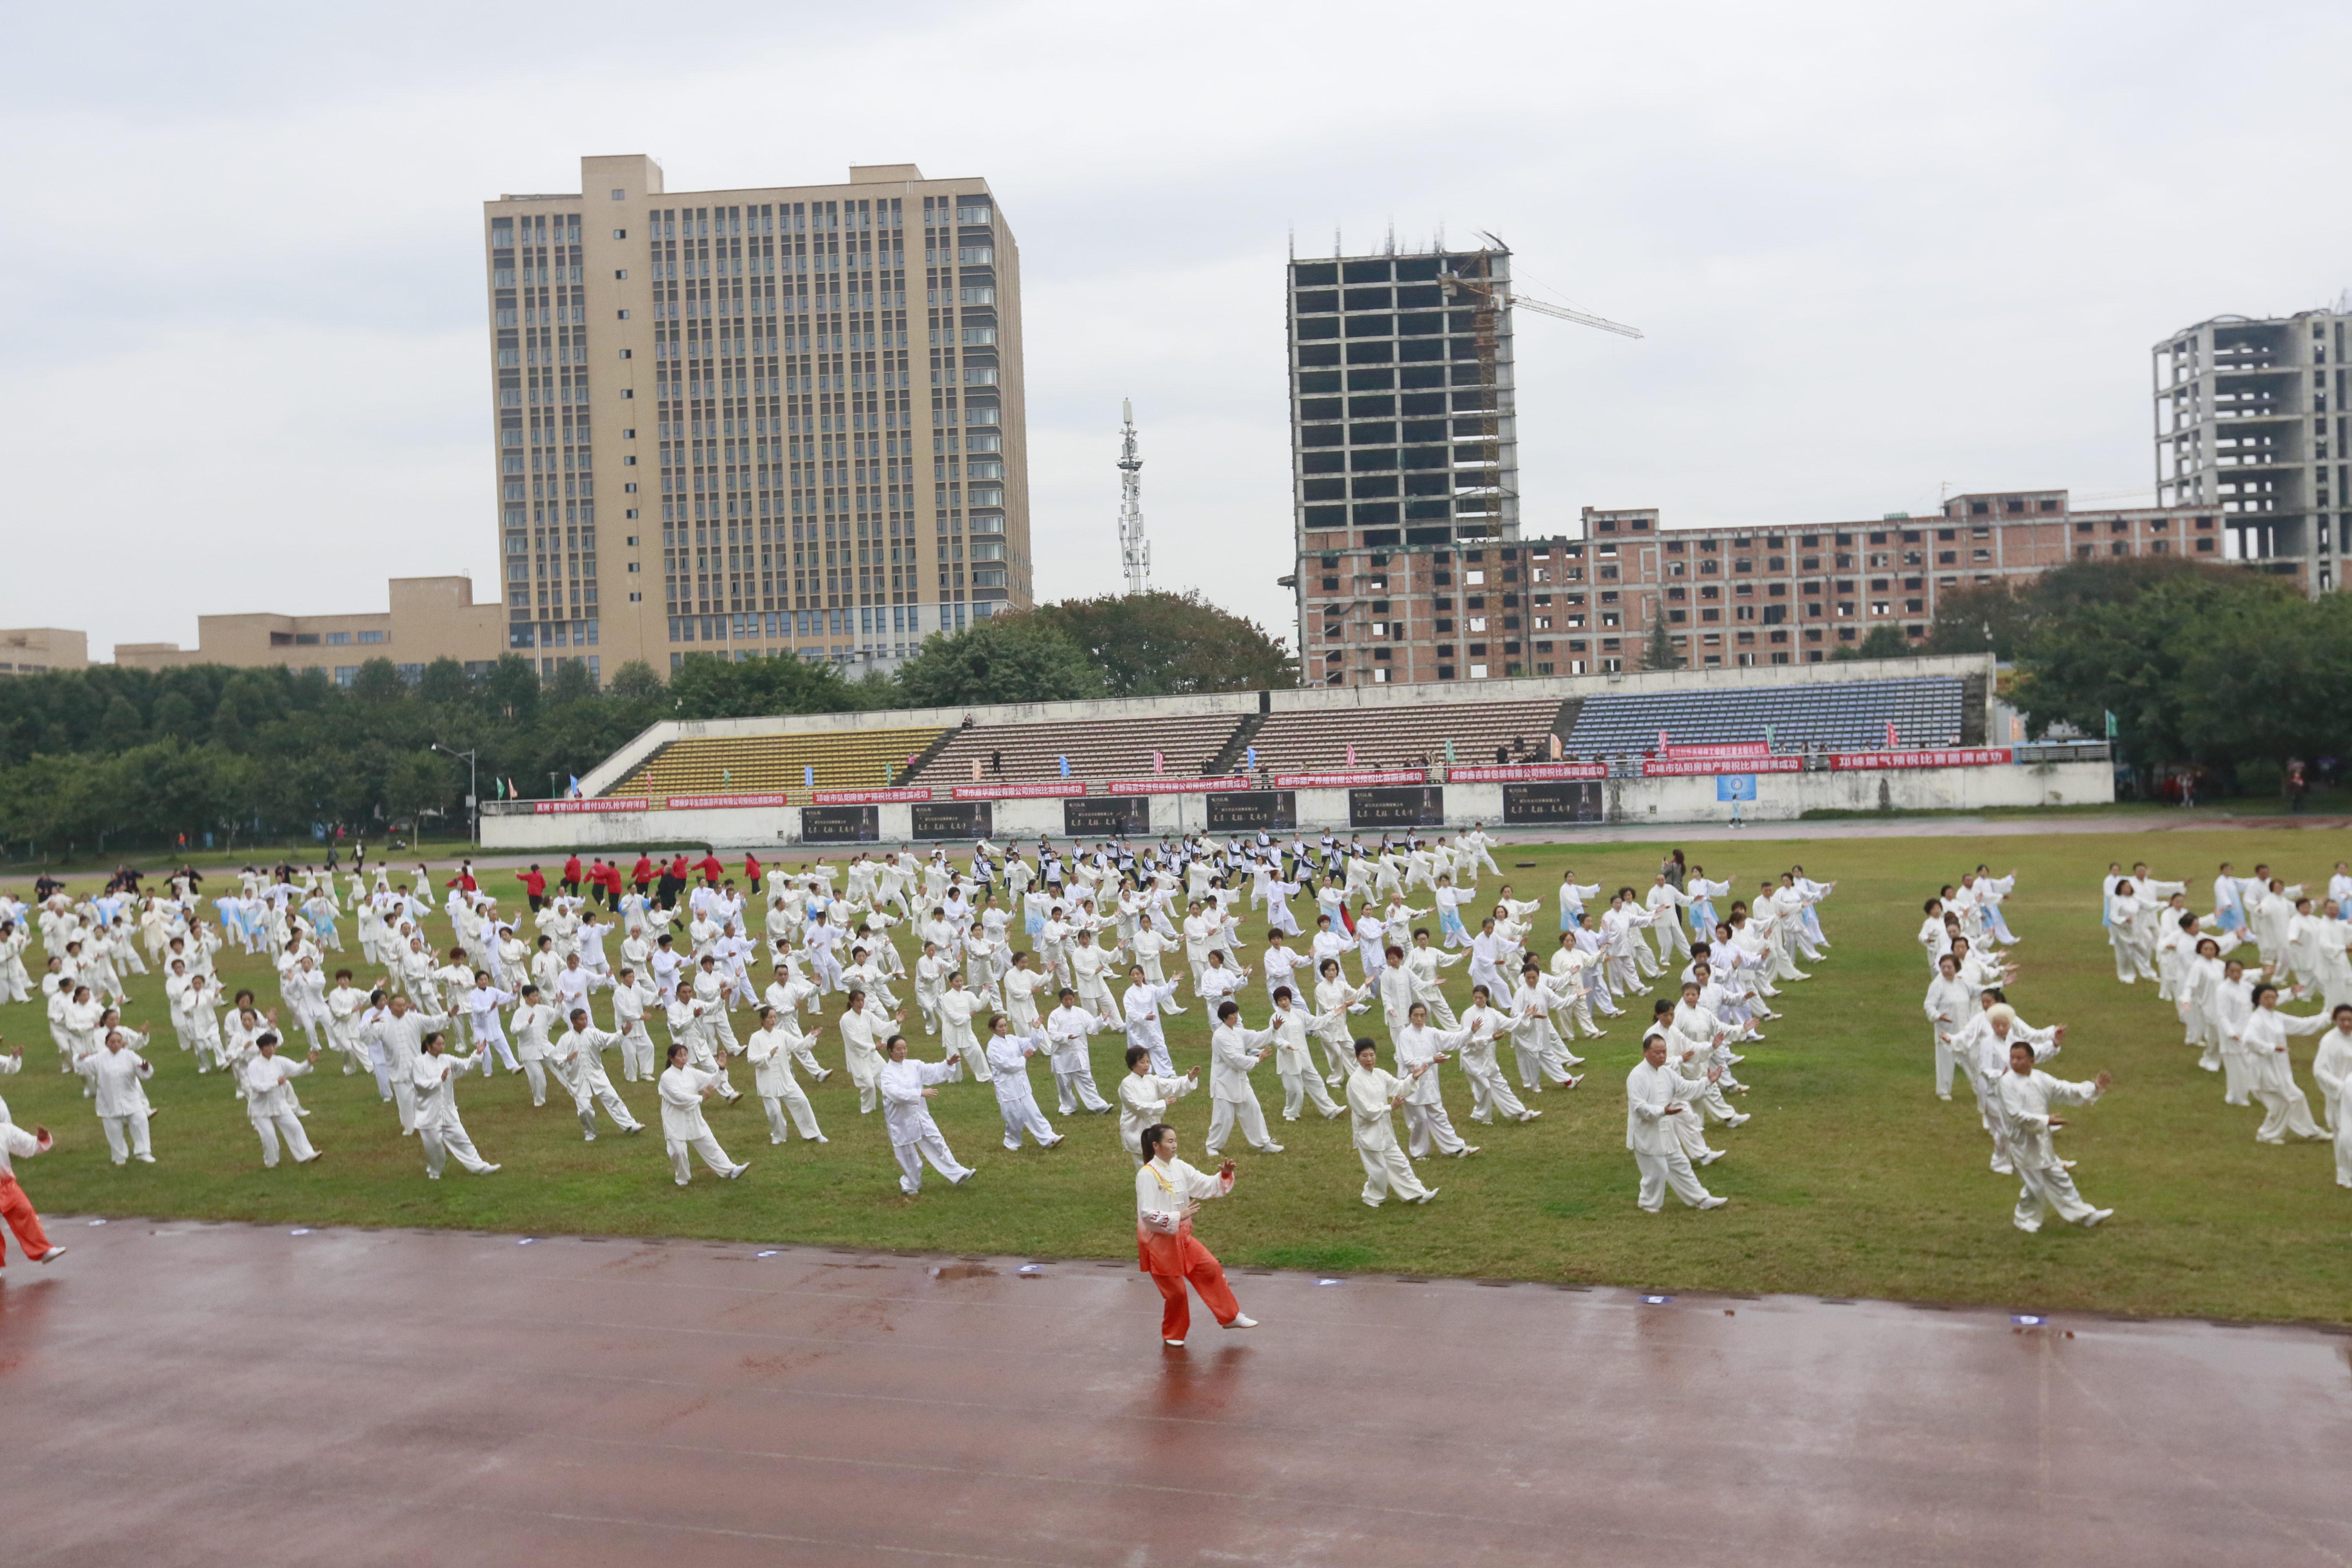 2020四川省太极拳锦标赛暨四川省武术通段赛顺利举行